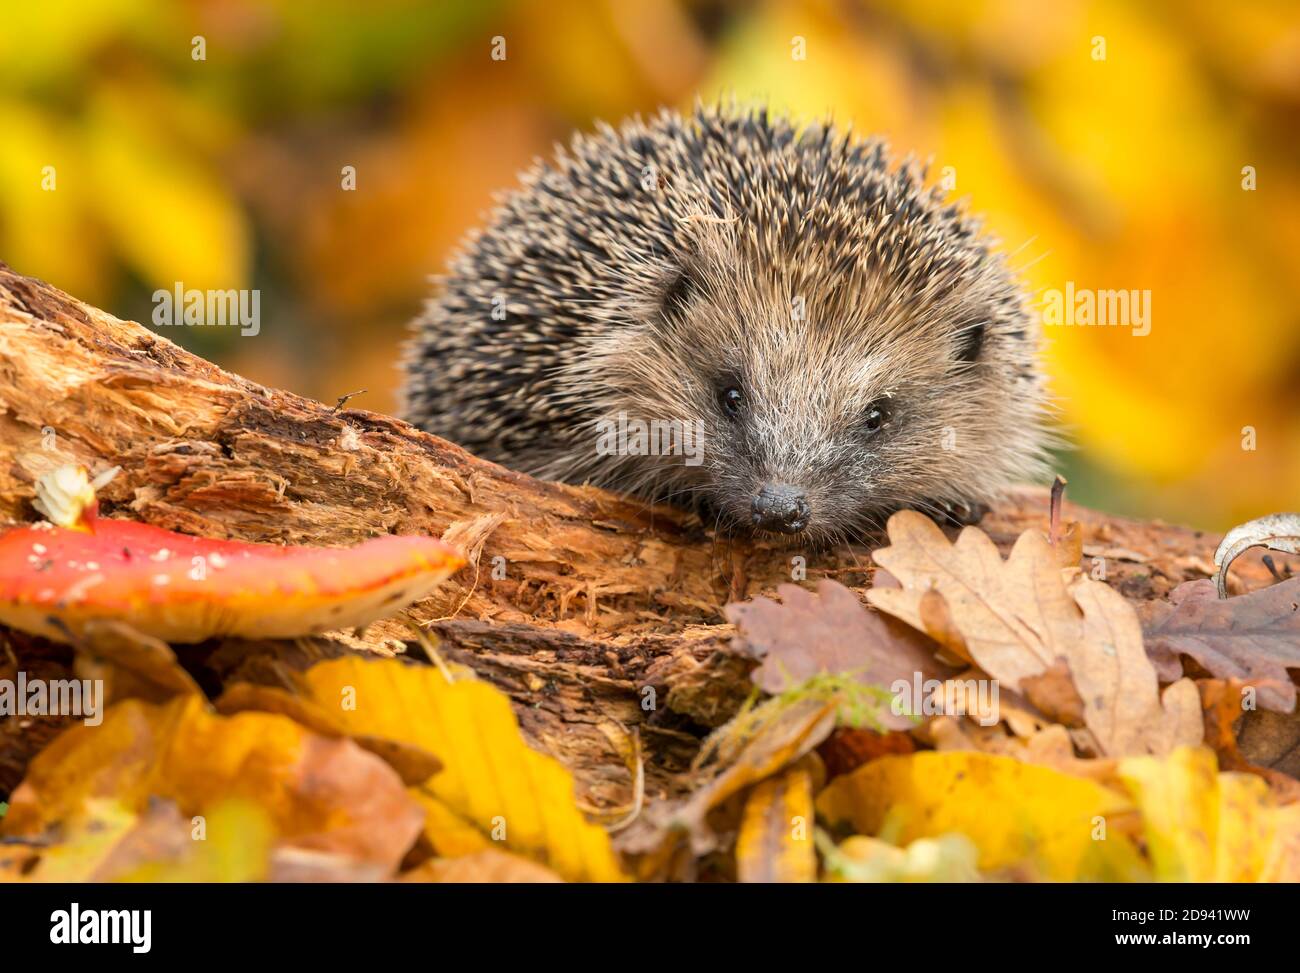 Hedgehog (Nombre científico: Erinaceus europaeus) Salvaje, nativo, europeo hedgehog forrajeo en un tronco de hojas de otoño de colores, mirando hacia adelante. Horizonte Foto de stock